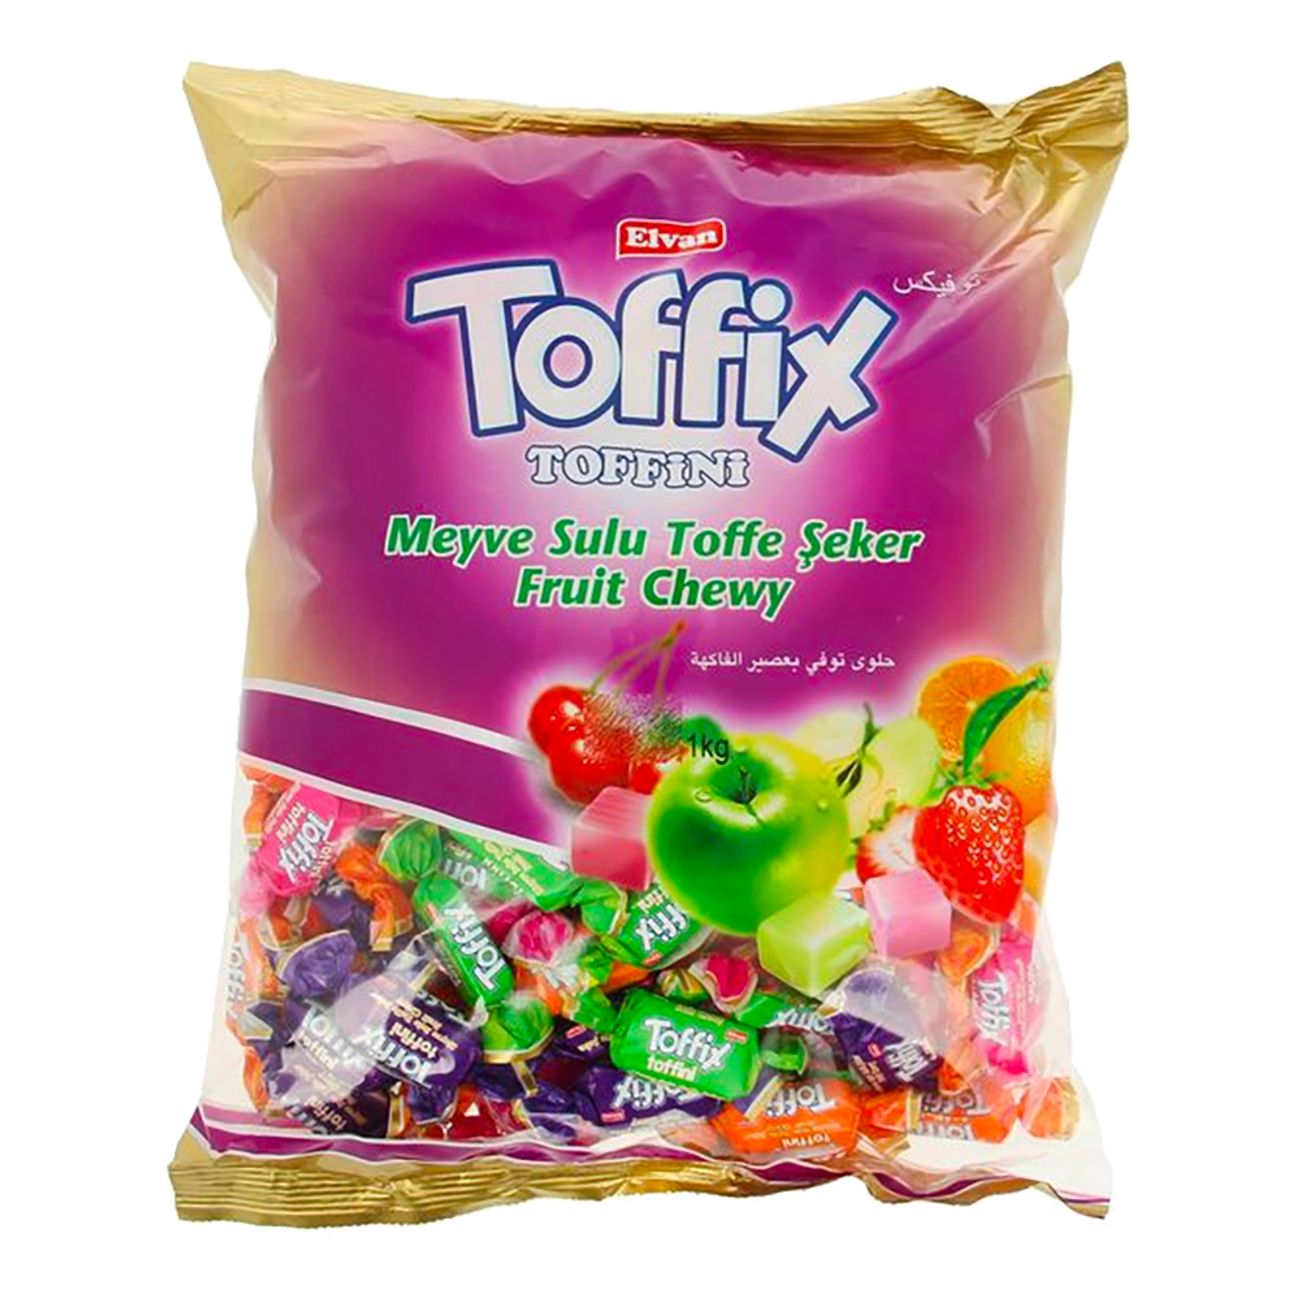 toffix-toffini-86361-1